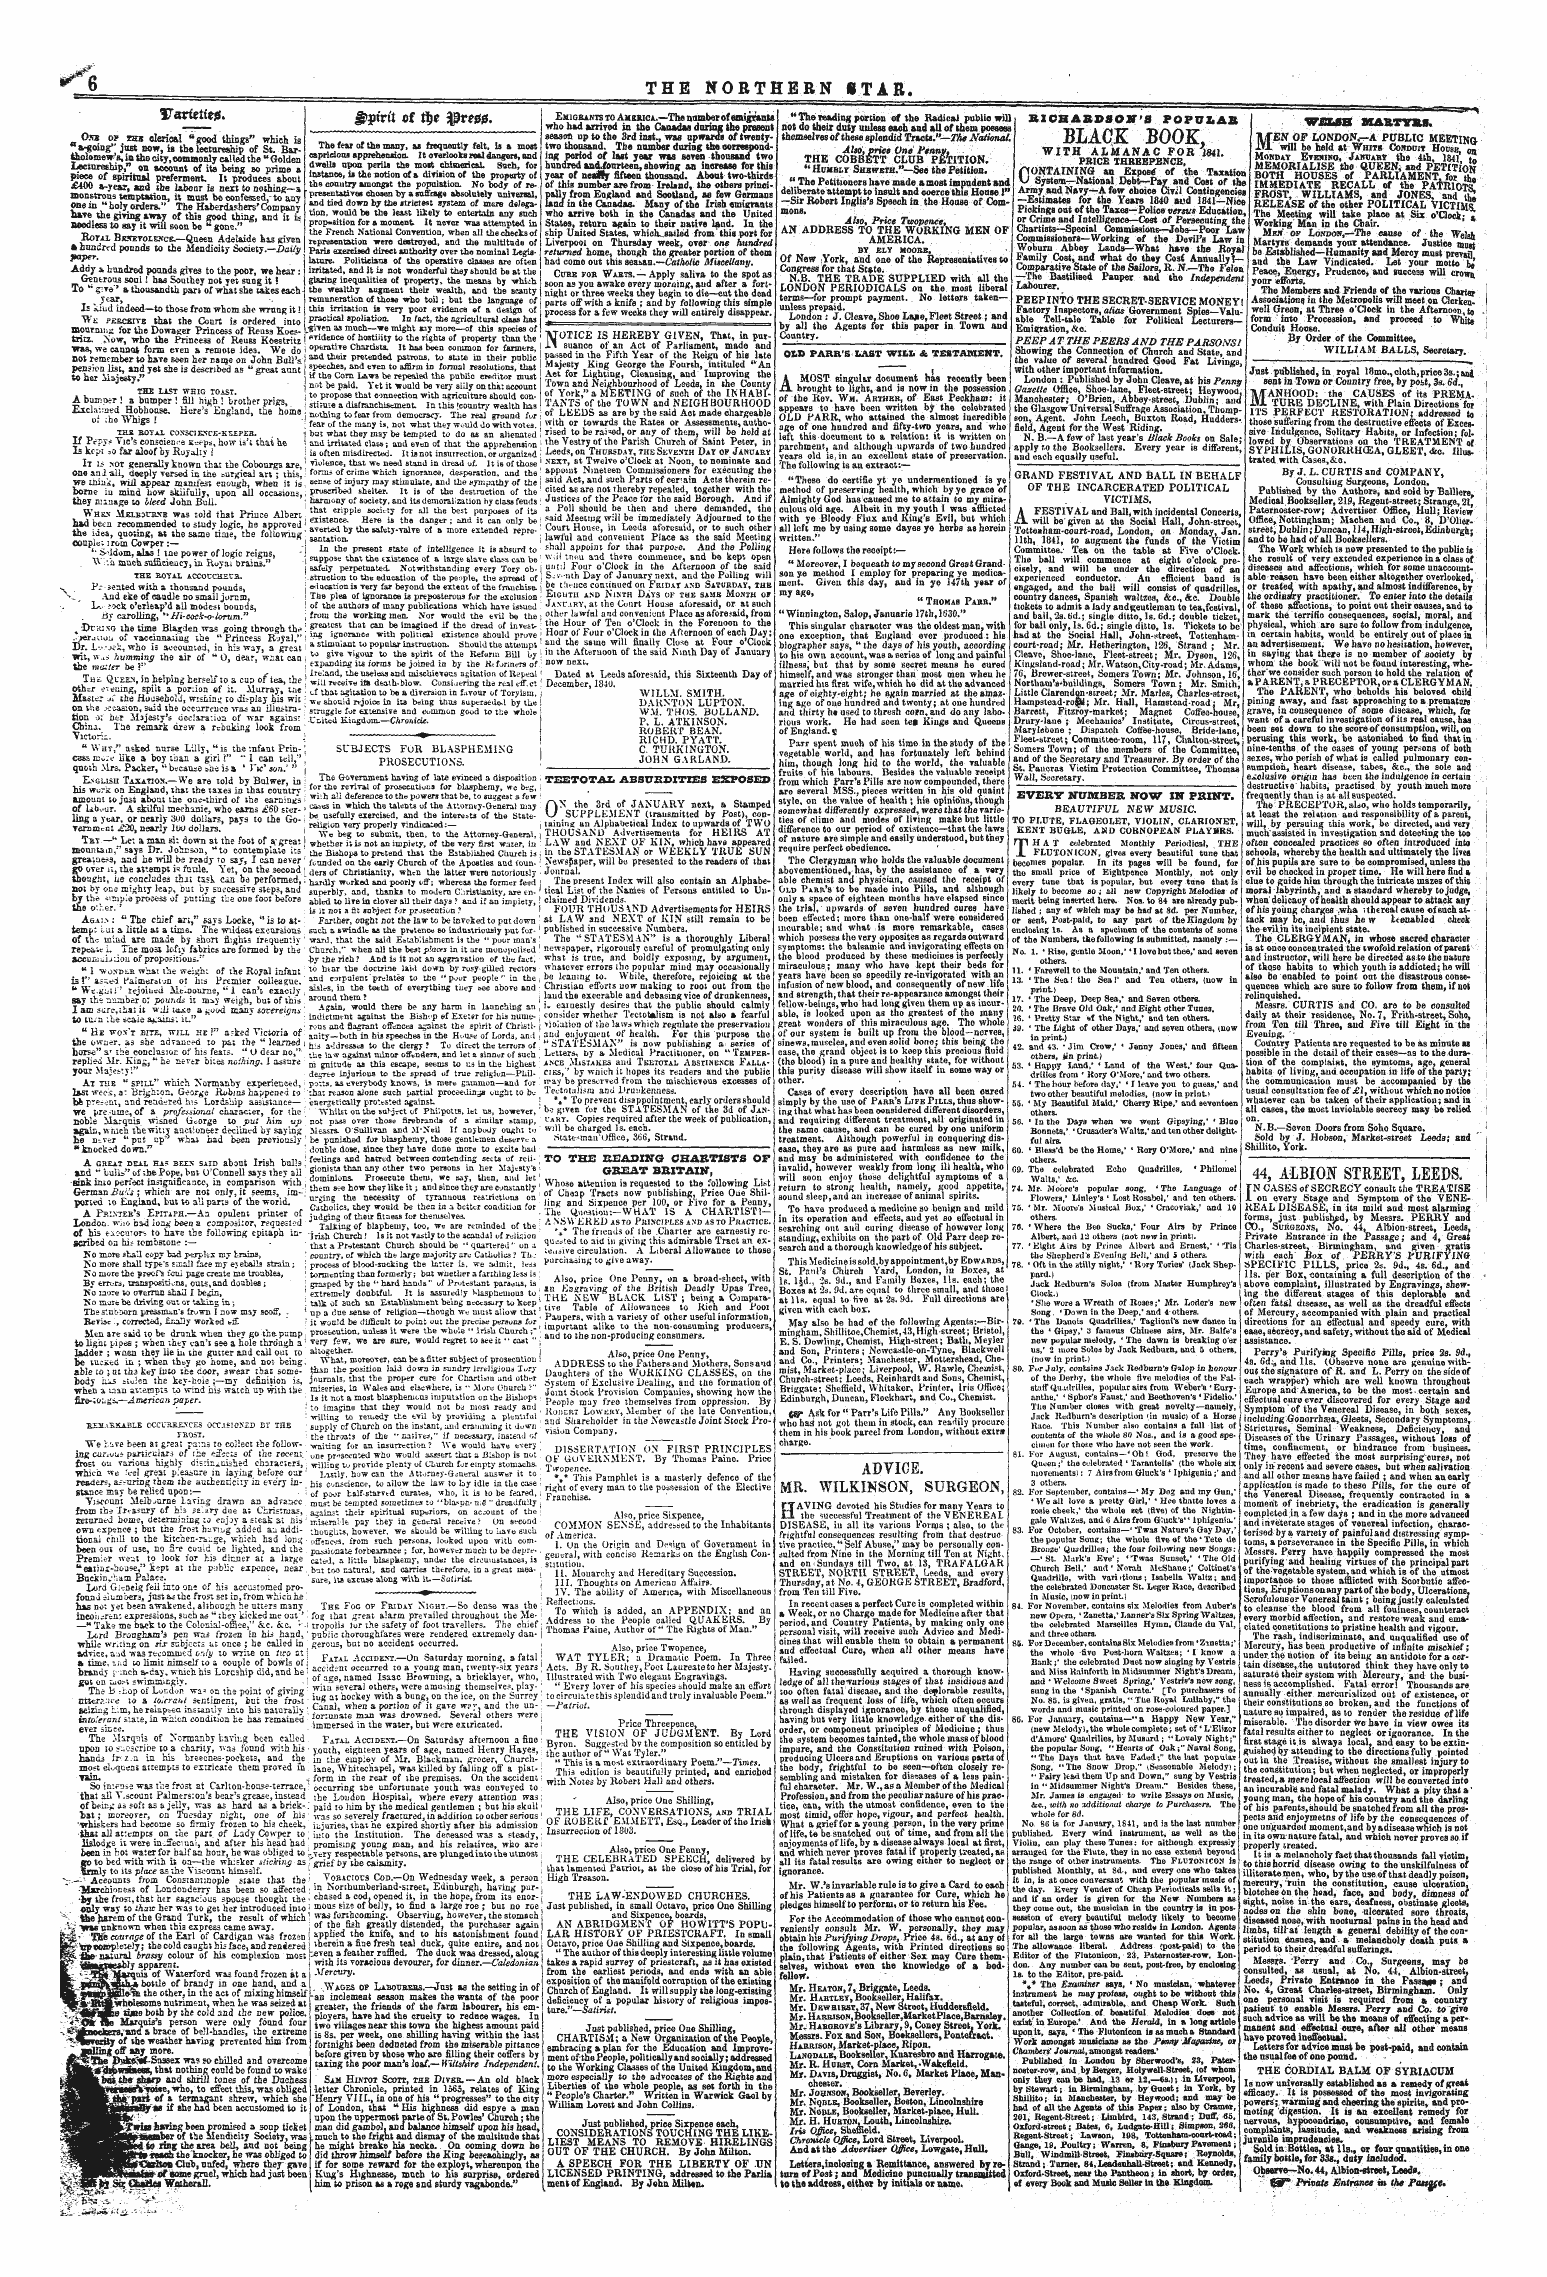 Northern Star (1837-1852): jS F Y, 1st edition - G&Gt;Prrtt Ot Tye Iam#.